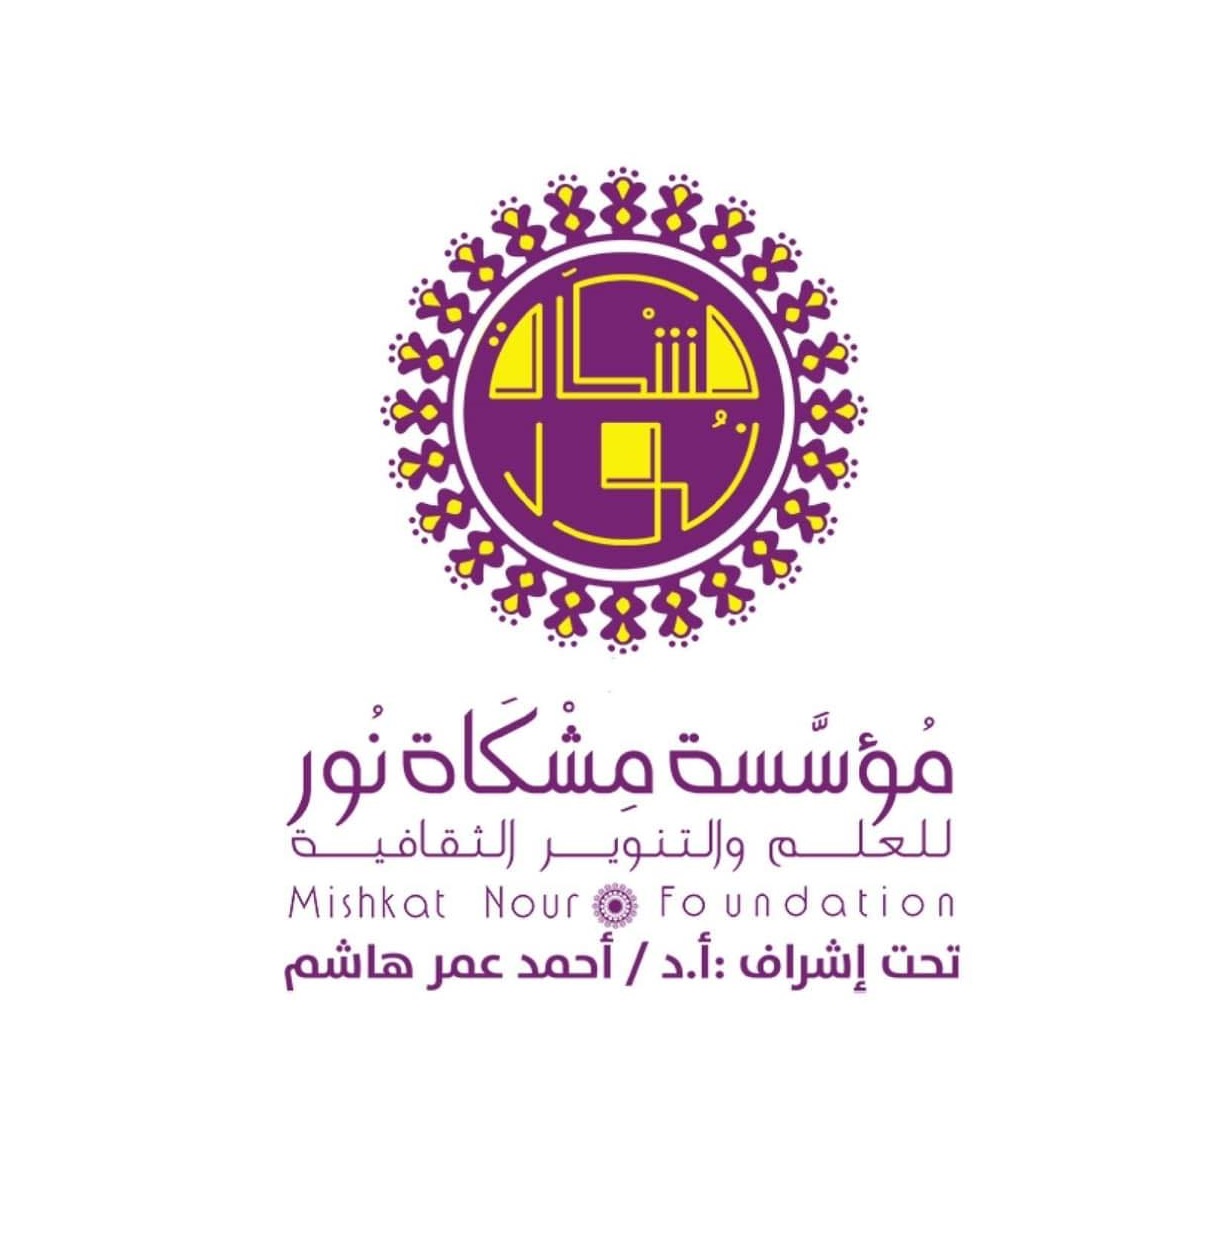 Mishkat Nour Foundation